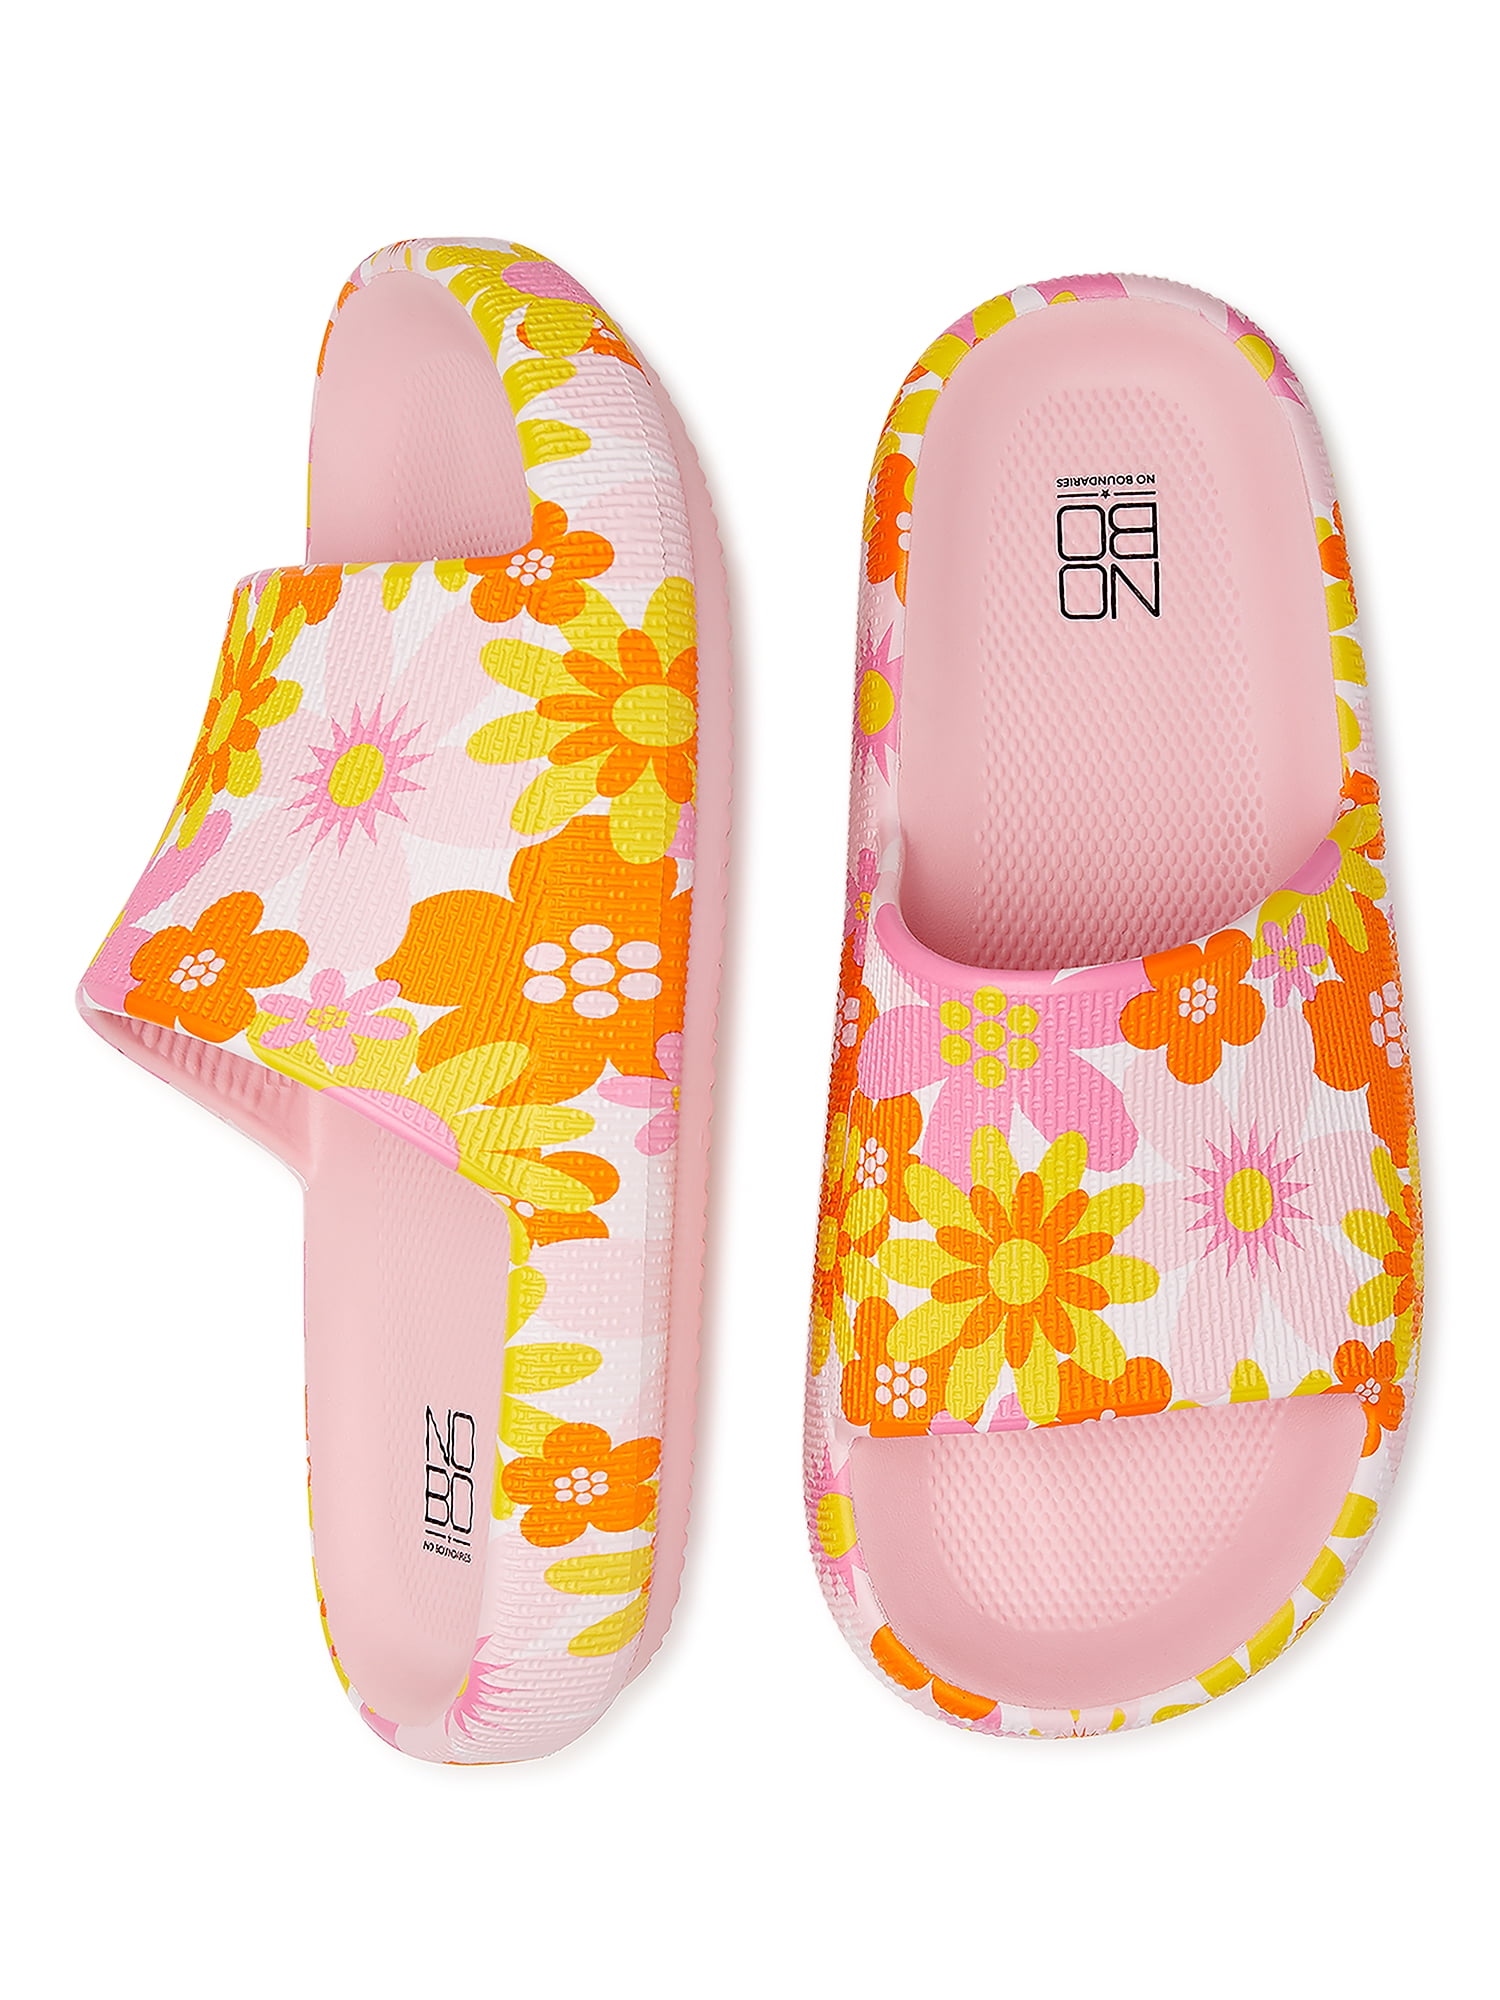 No Boundaries Women's Comfort Slide Sandals - Walmart.com